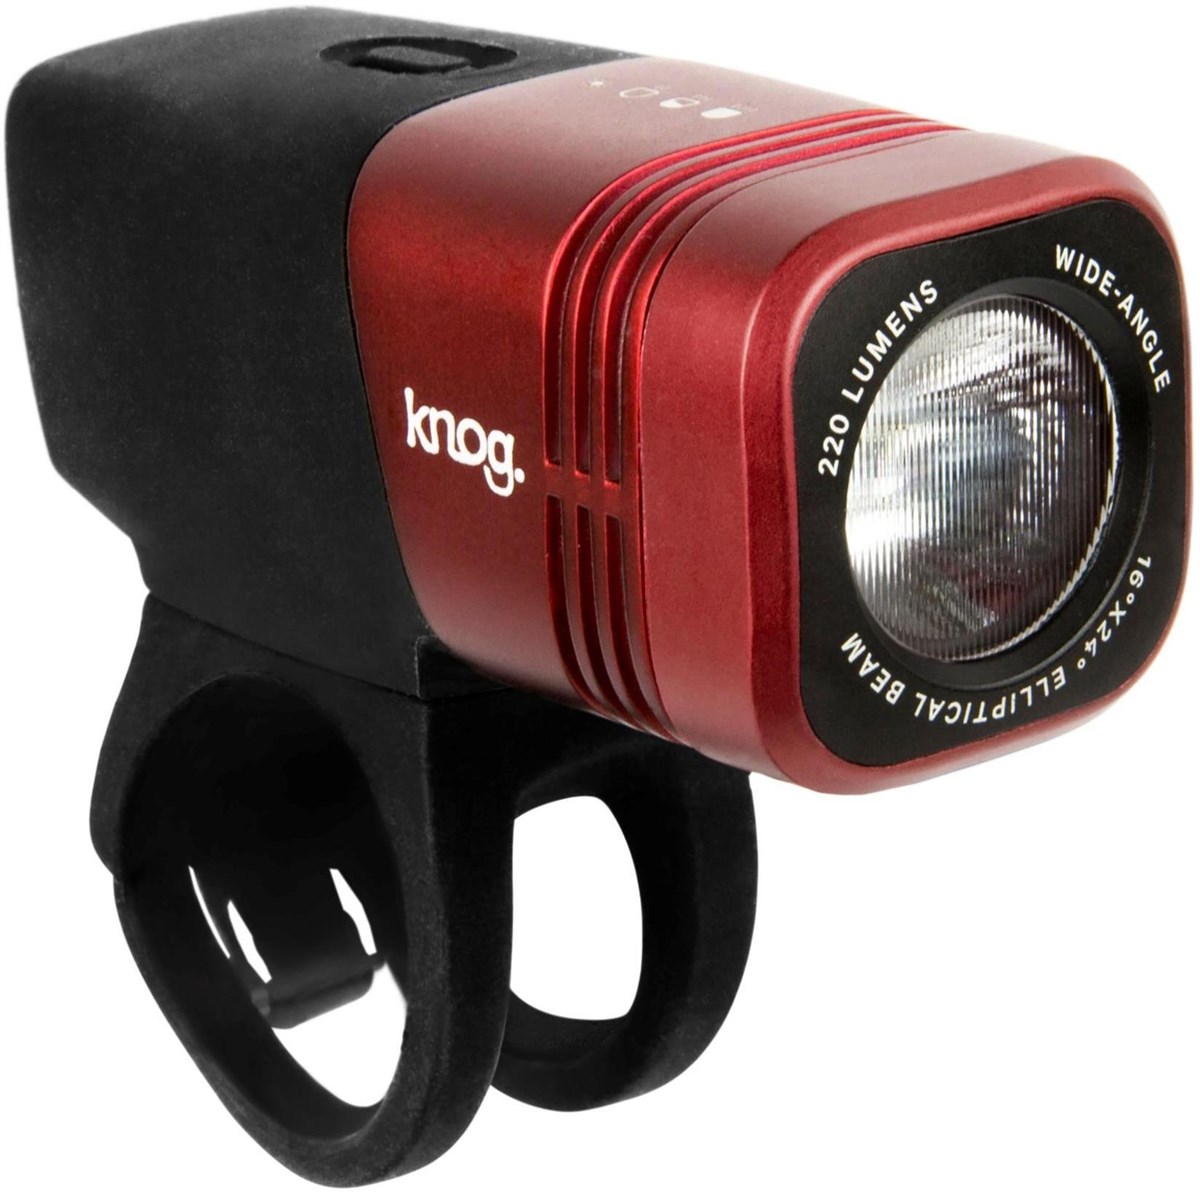 Knog Blinder Arc 220 USB Rechargeable Front Light